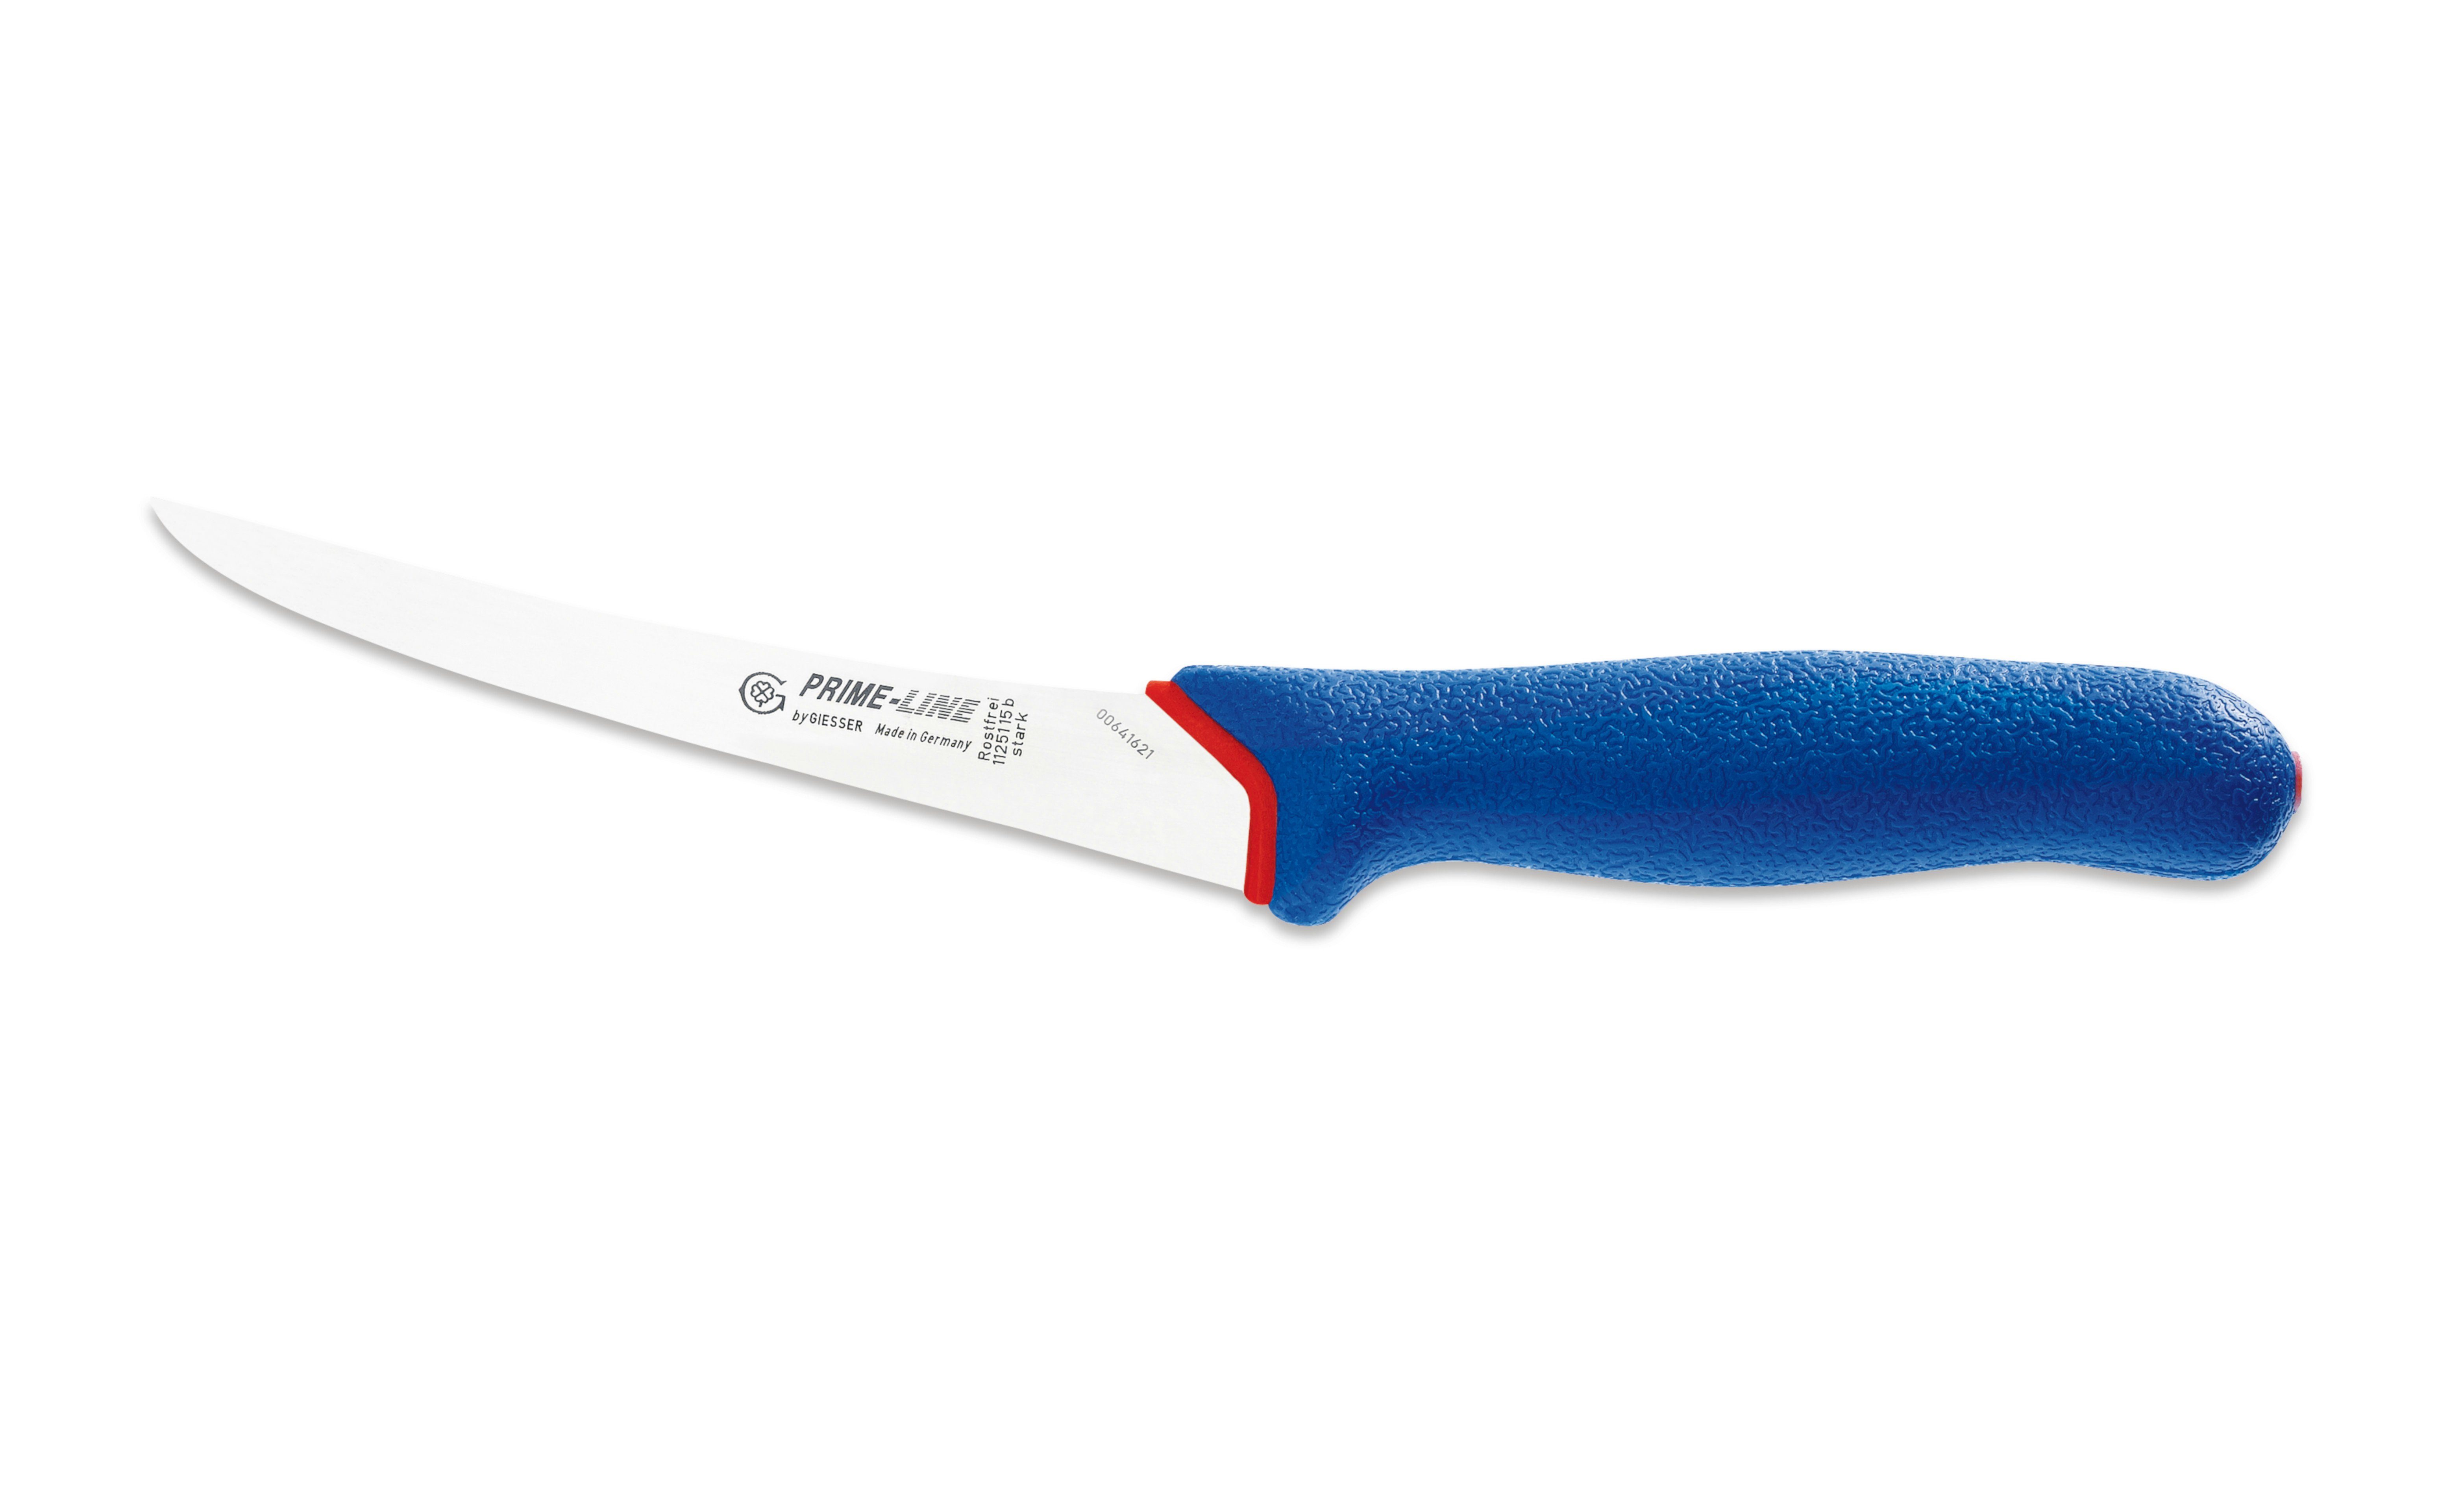 Giesser Messer Ausbeinmesser Fleischermesser 11250 13/15, PrimeLine, rutschfest, weicher Griff blau